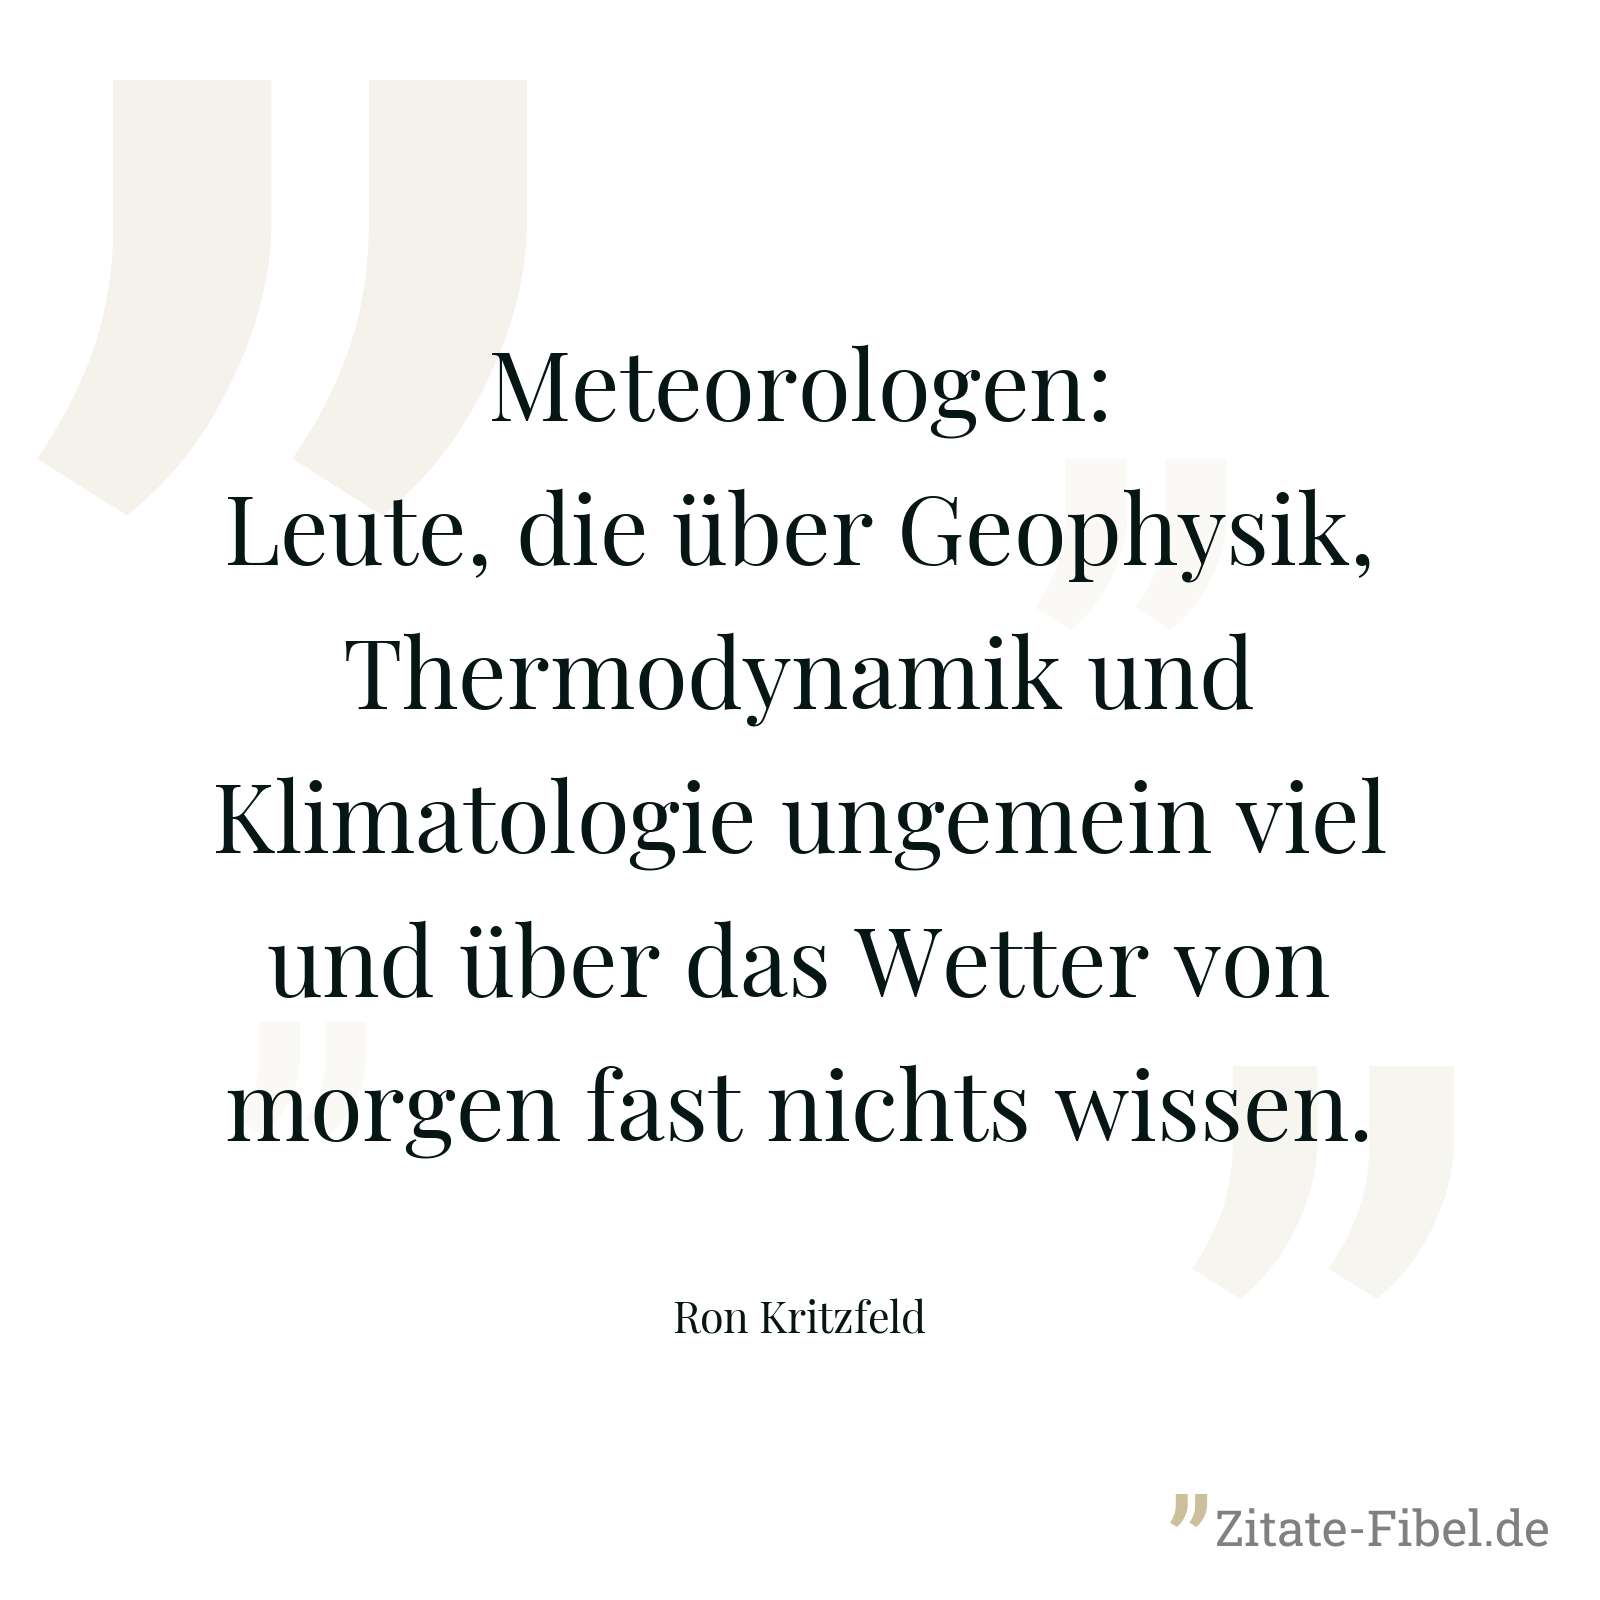 Meteorologen: Leute, die über Geophysik, Thermodynamik und Klimatologie ungemein viel und über das Wetter von morgen fast nichts wissen. - Ron Kritzfeld